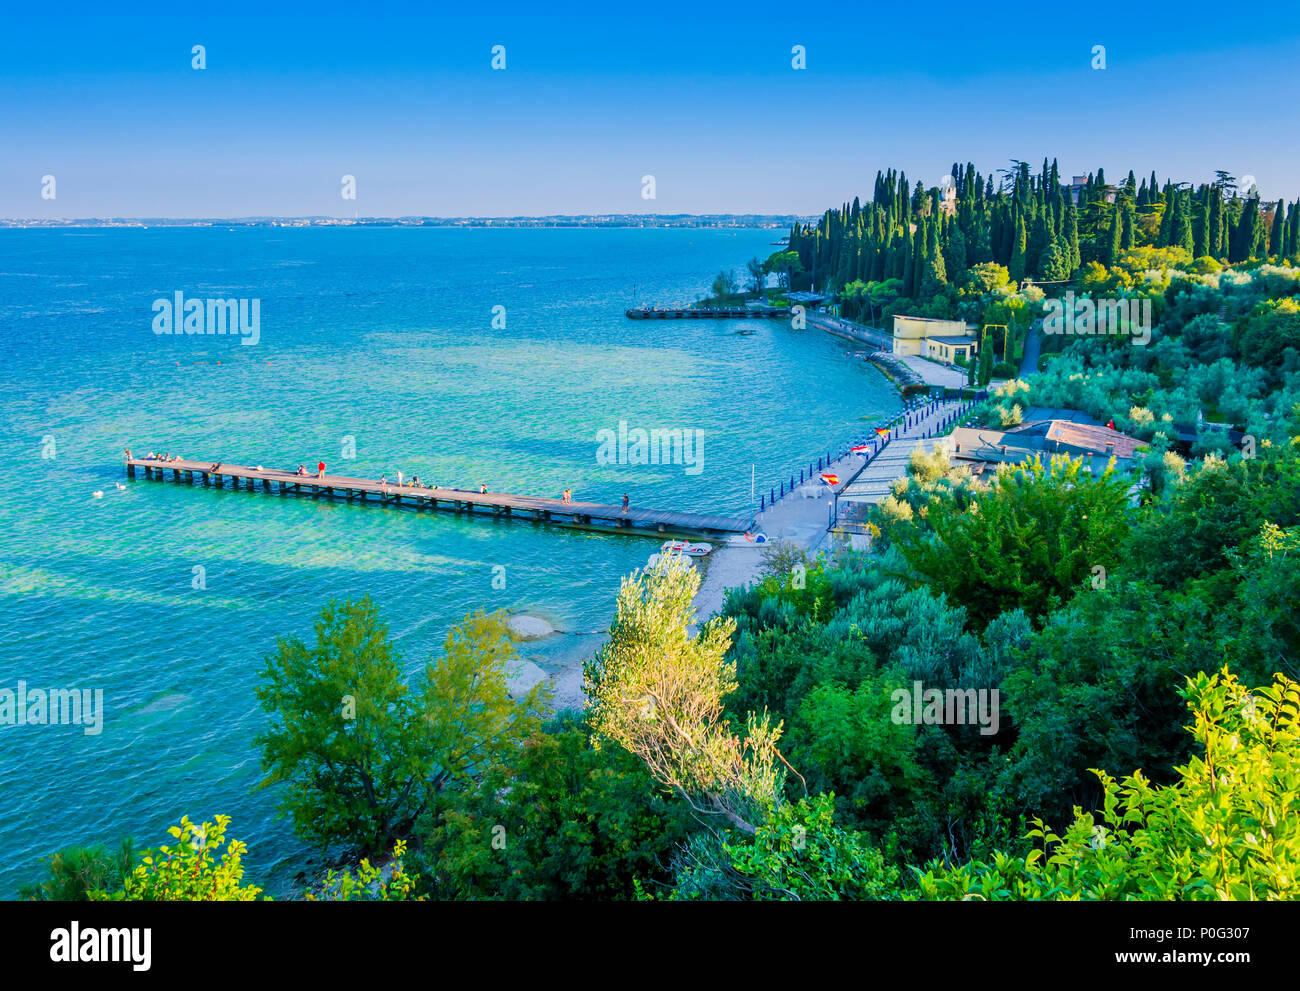 Vista panoramica della spiaggia di Sirmione, una graziosa cittadina situata sulle rive del Lago di Garda nord italia Foto Stock